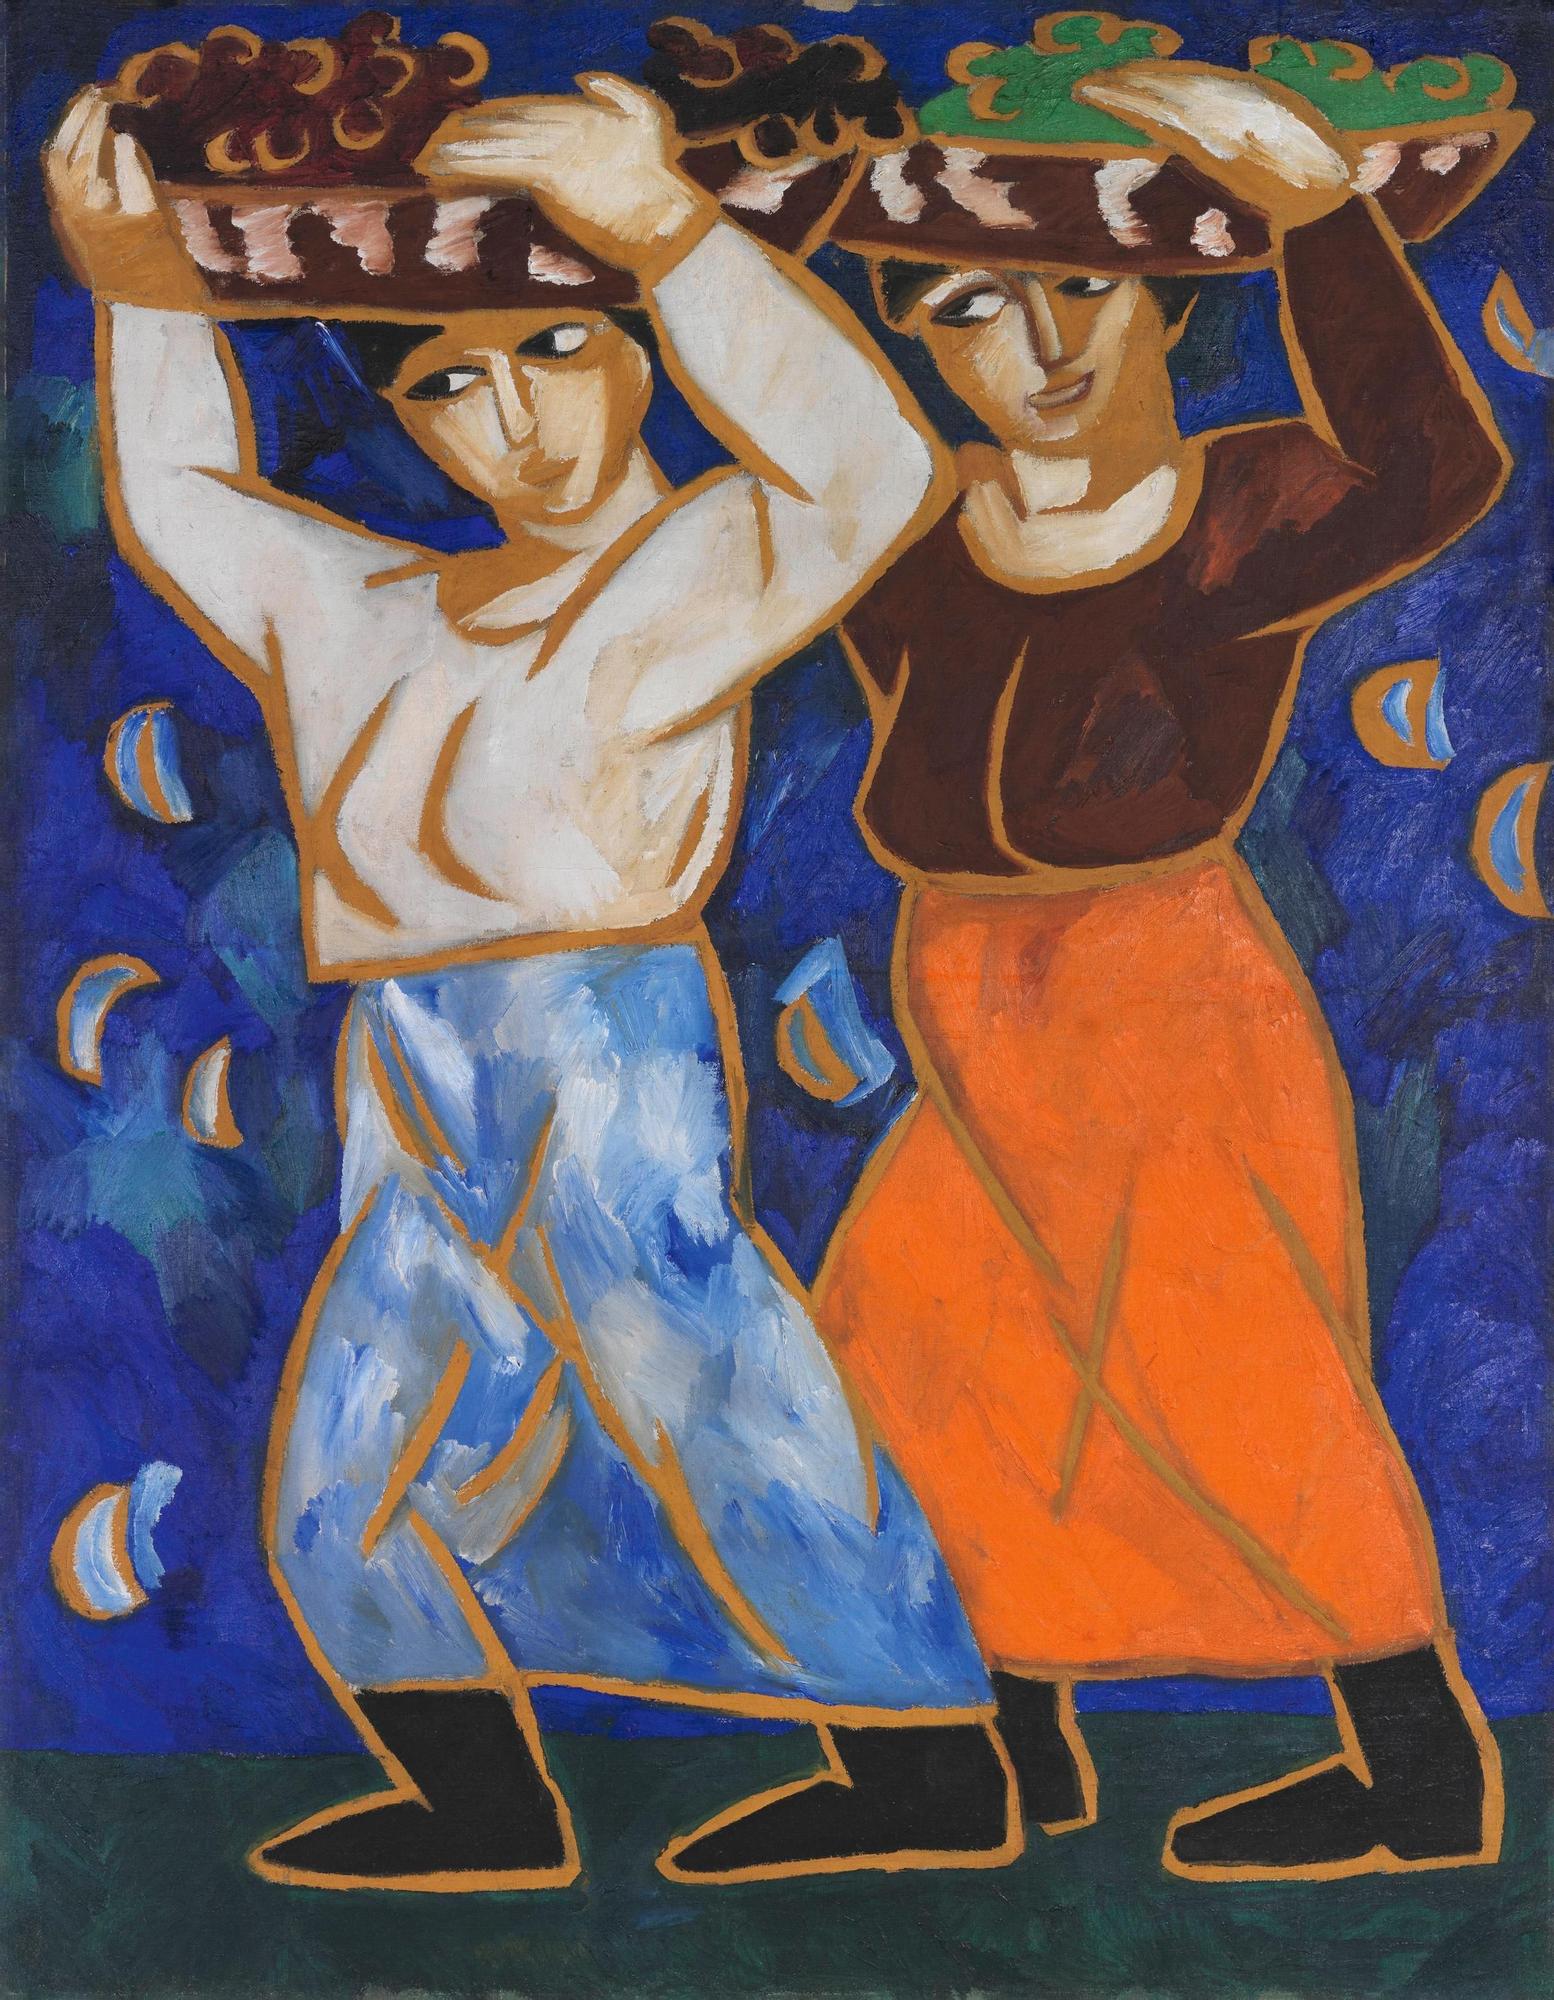 "Las porteadoras", Natalia Goncharova (1911)